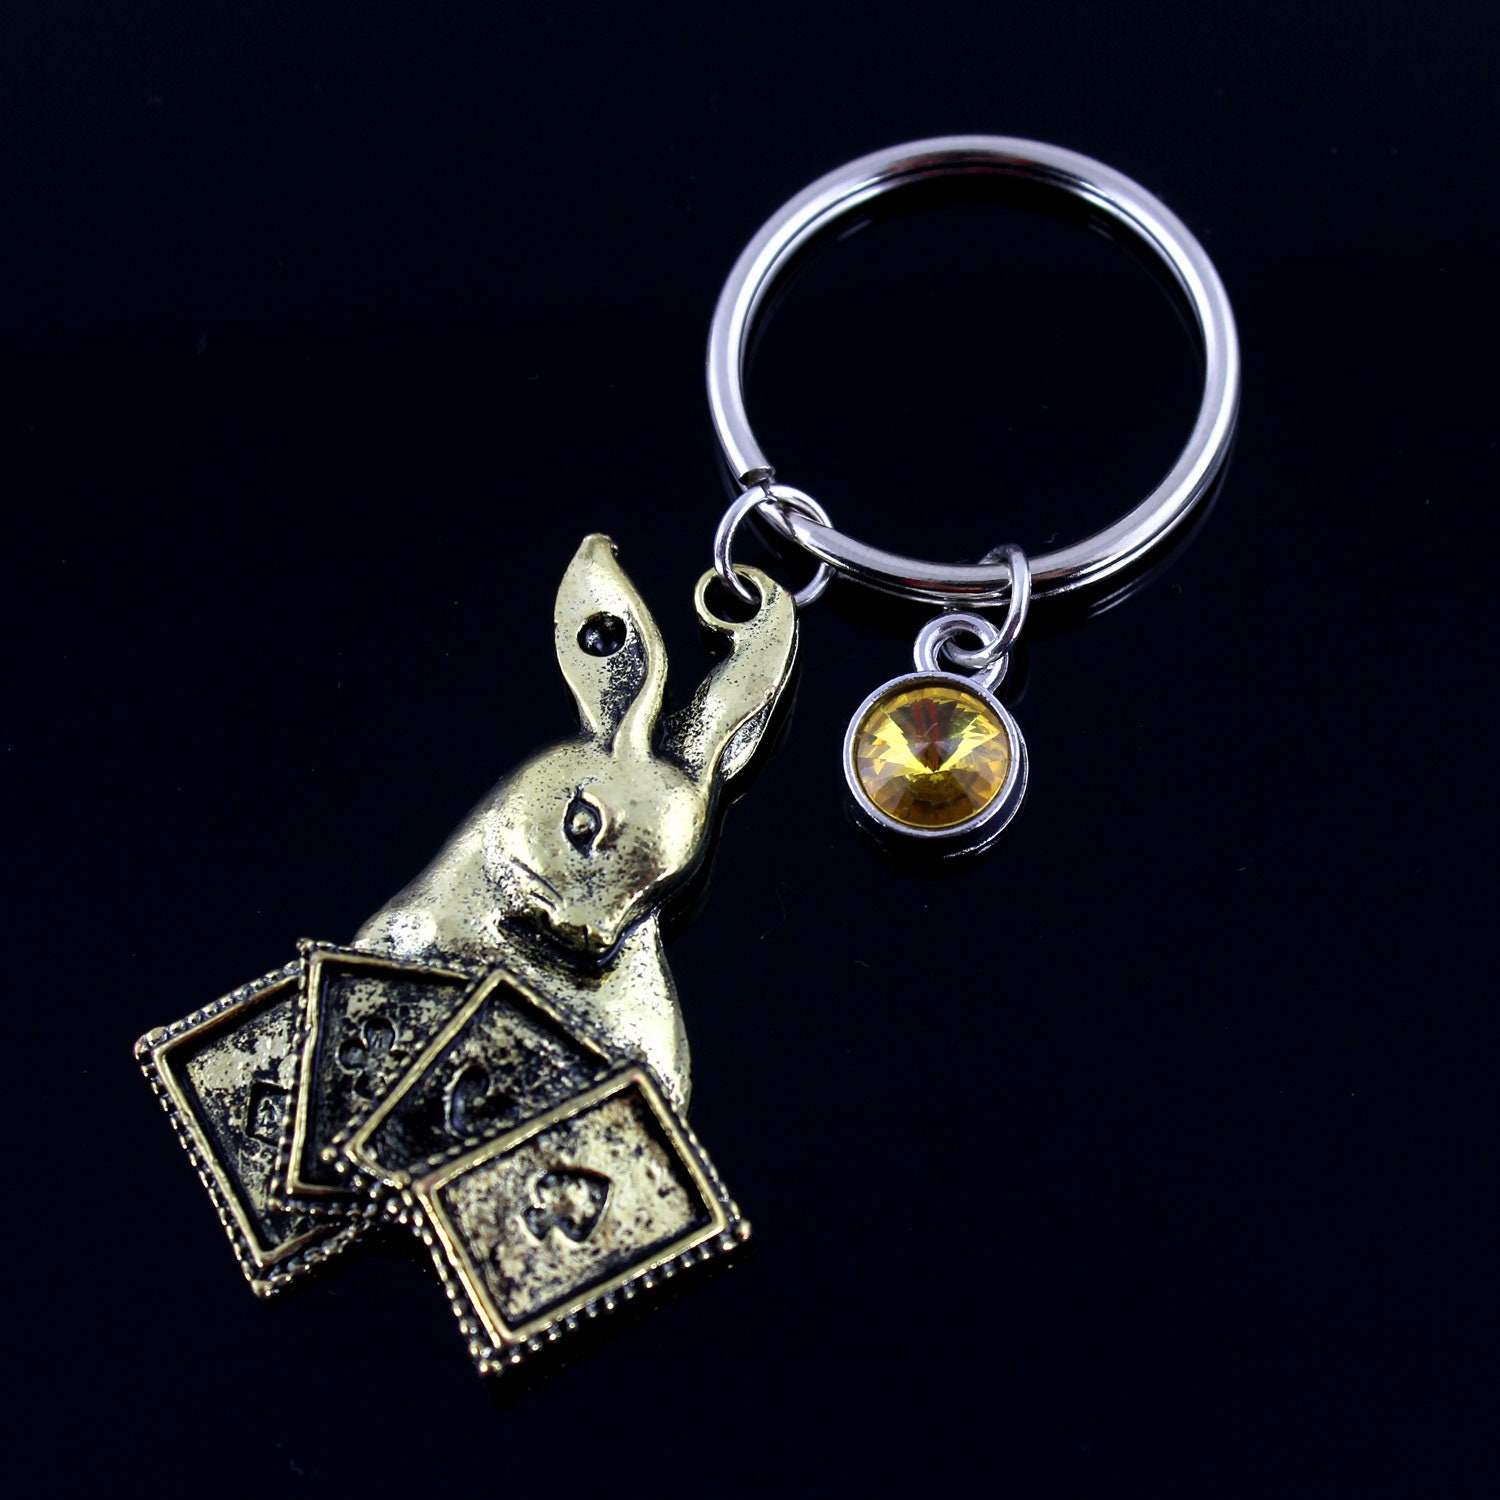 Rabbit Keychain, Rabbit & Playing Cards Keychain, Animal Jewelry, Farm Keychain, Personalized Birthstone Keychain